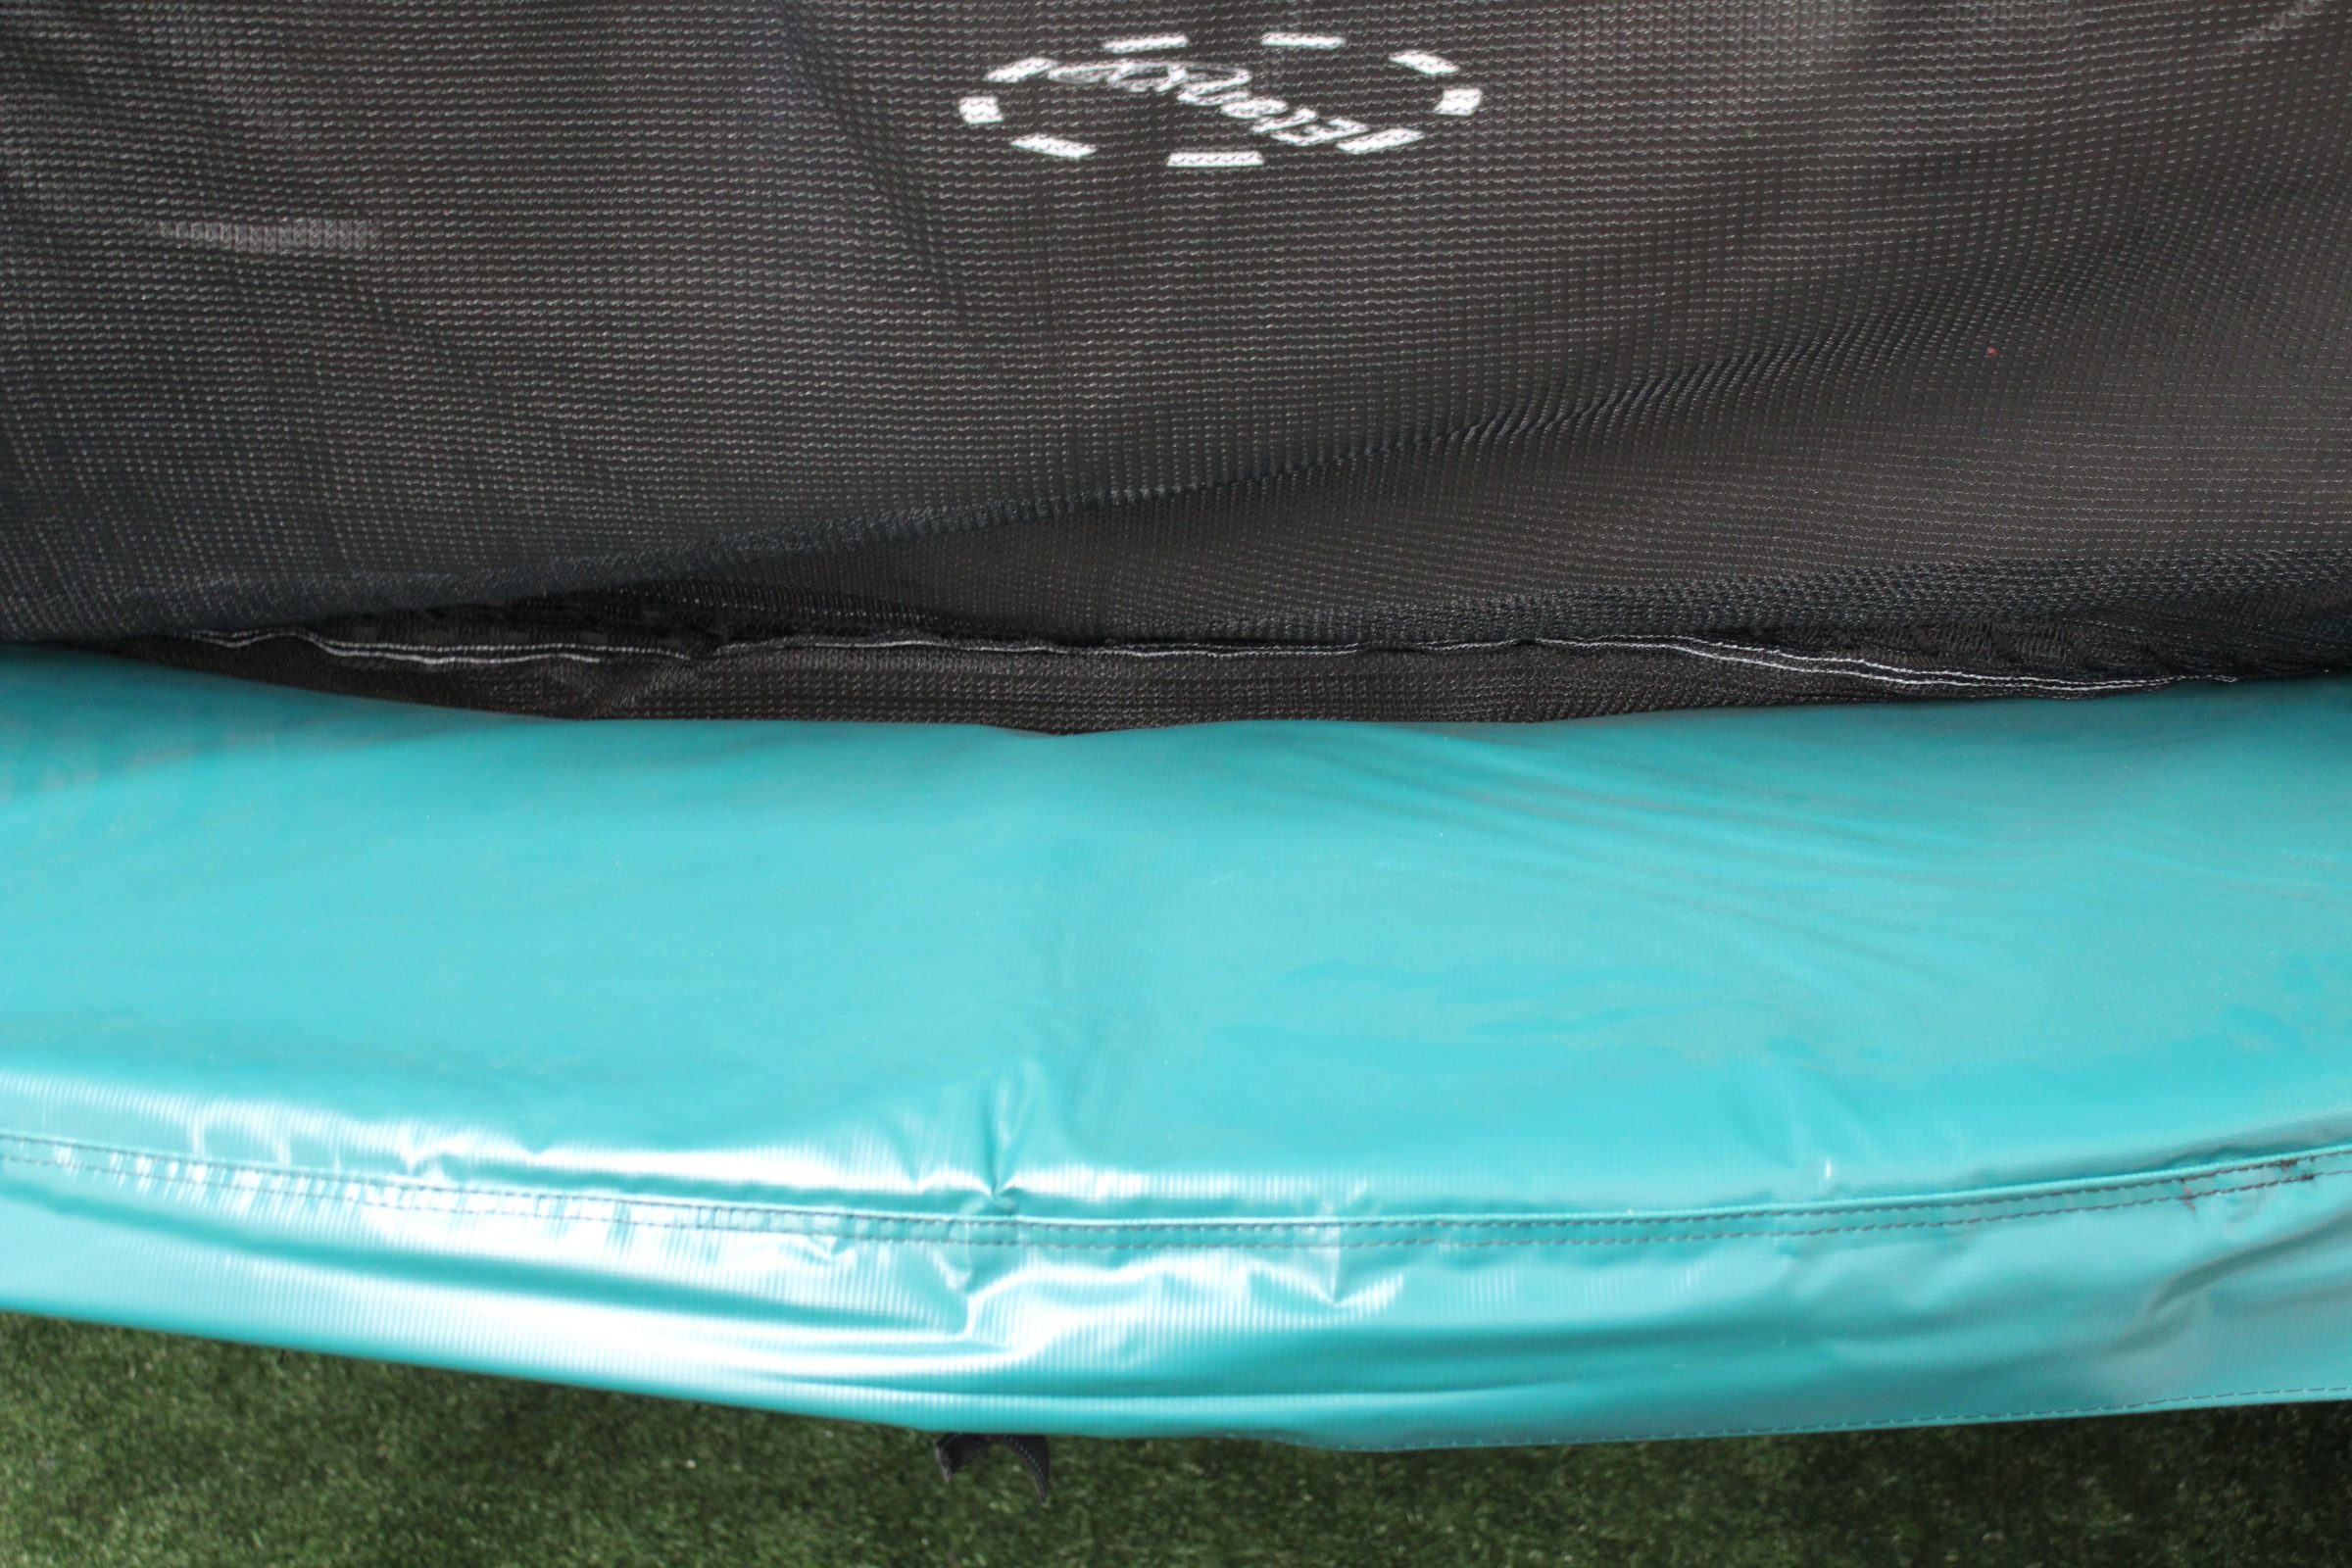 Etan Hi-Flyer rechthoekige trampoline met net 281 x 201 cm / 0965 groen